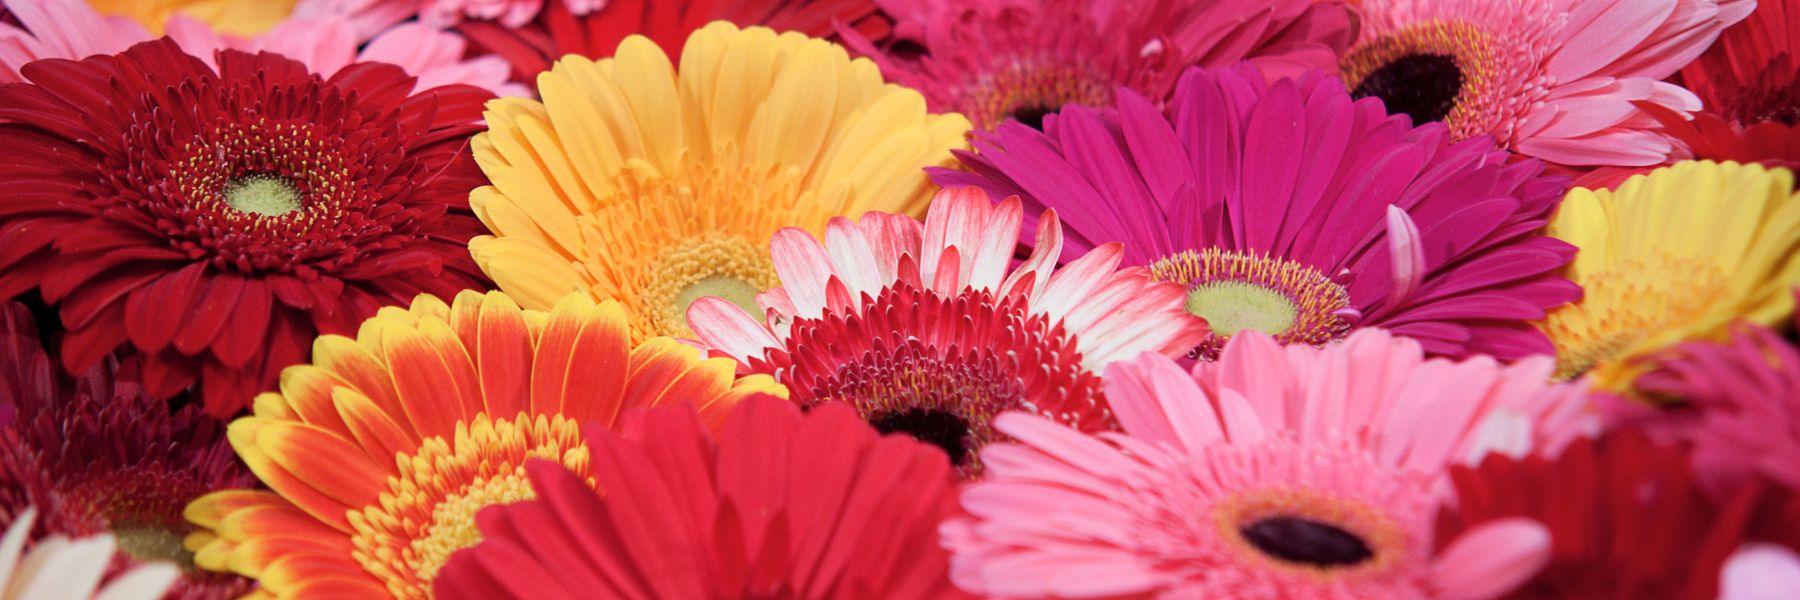 Gerbera Daisy: The Vibrant Blossom of Joy